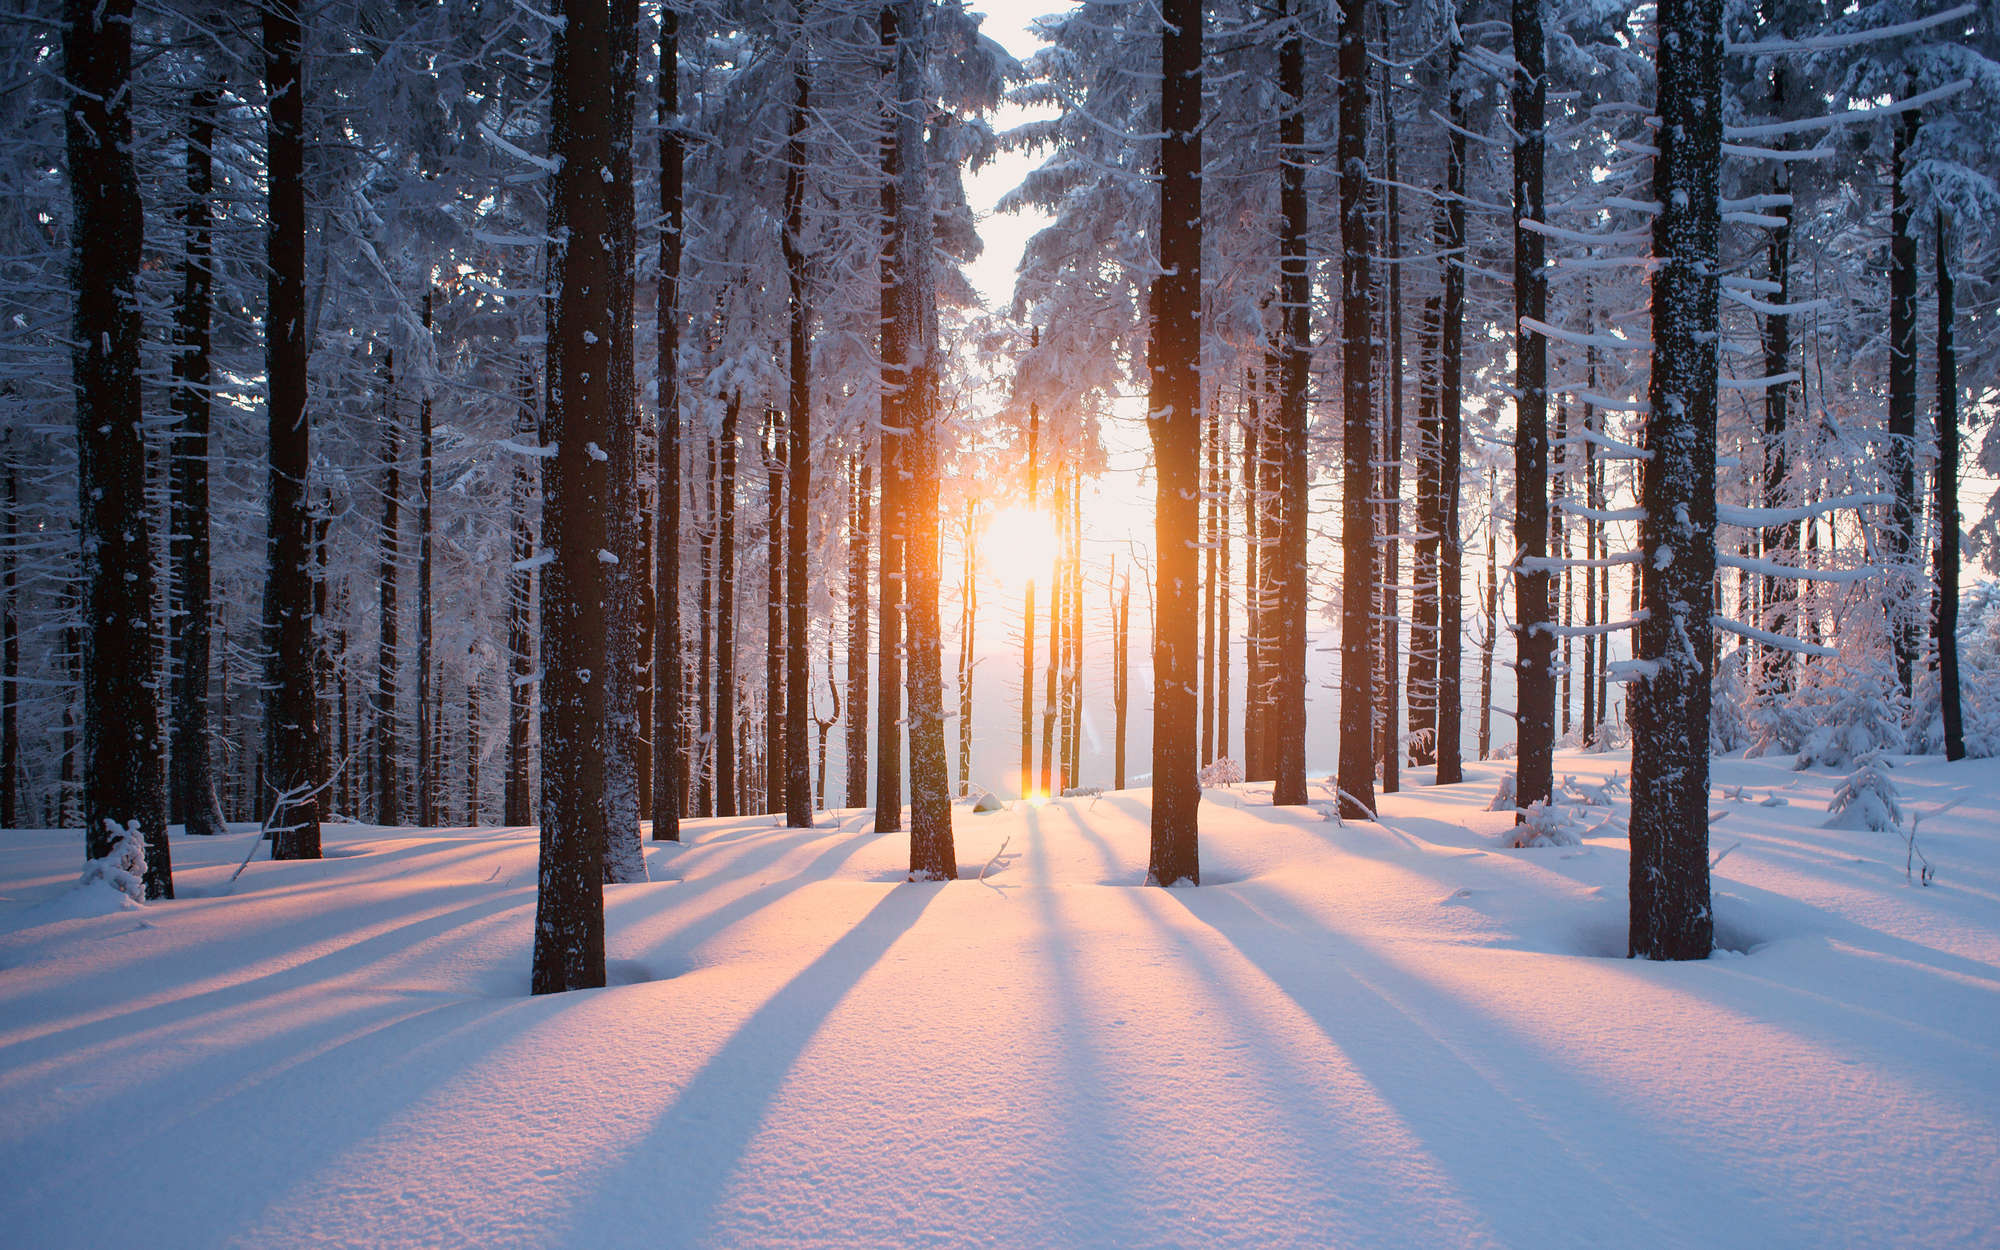             Fotomural Nieve en el bosque de invierno - tejido no tejido liso mate
        